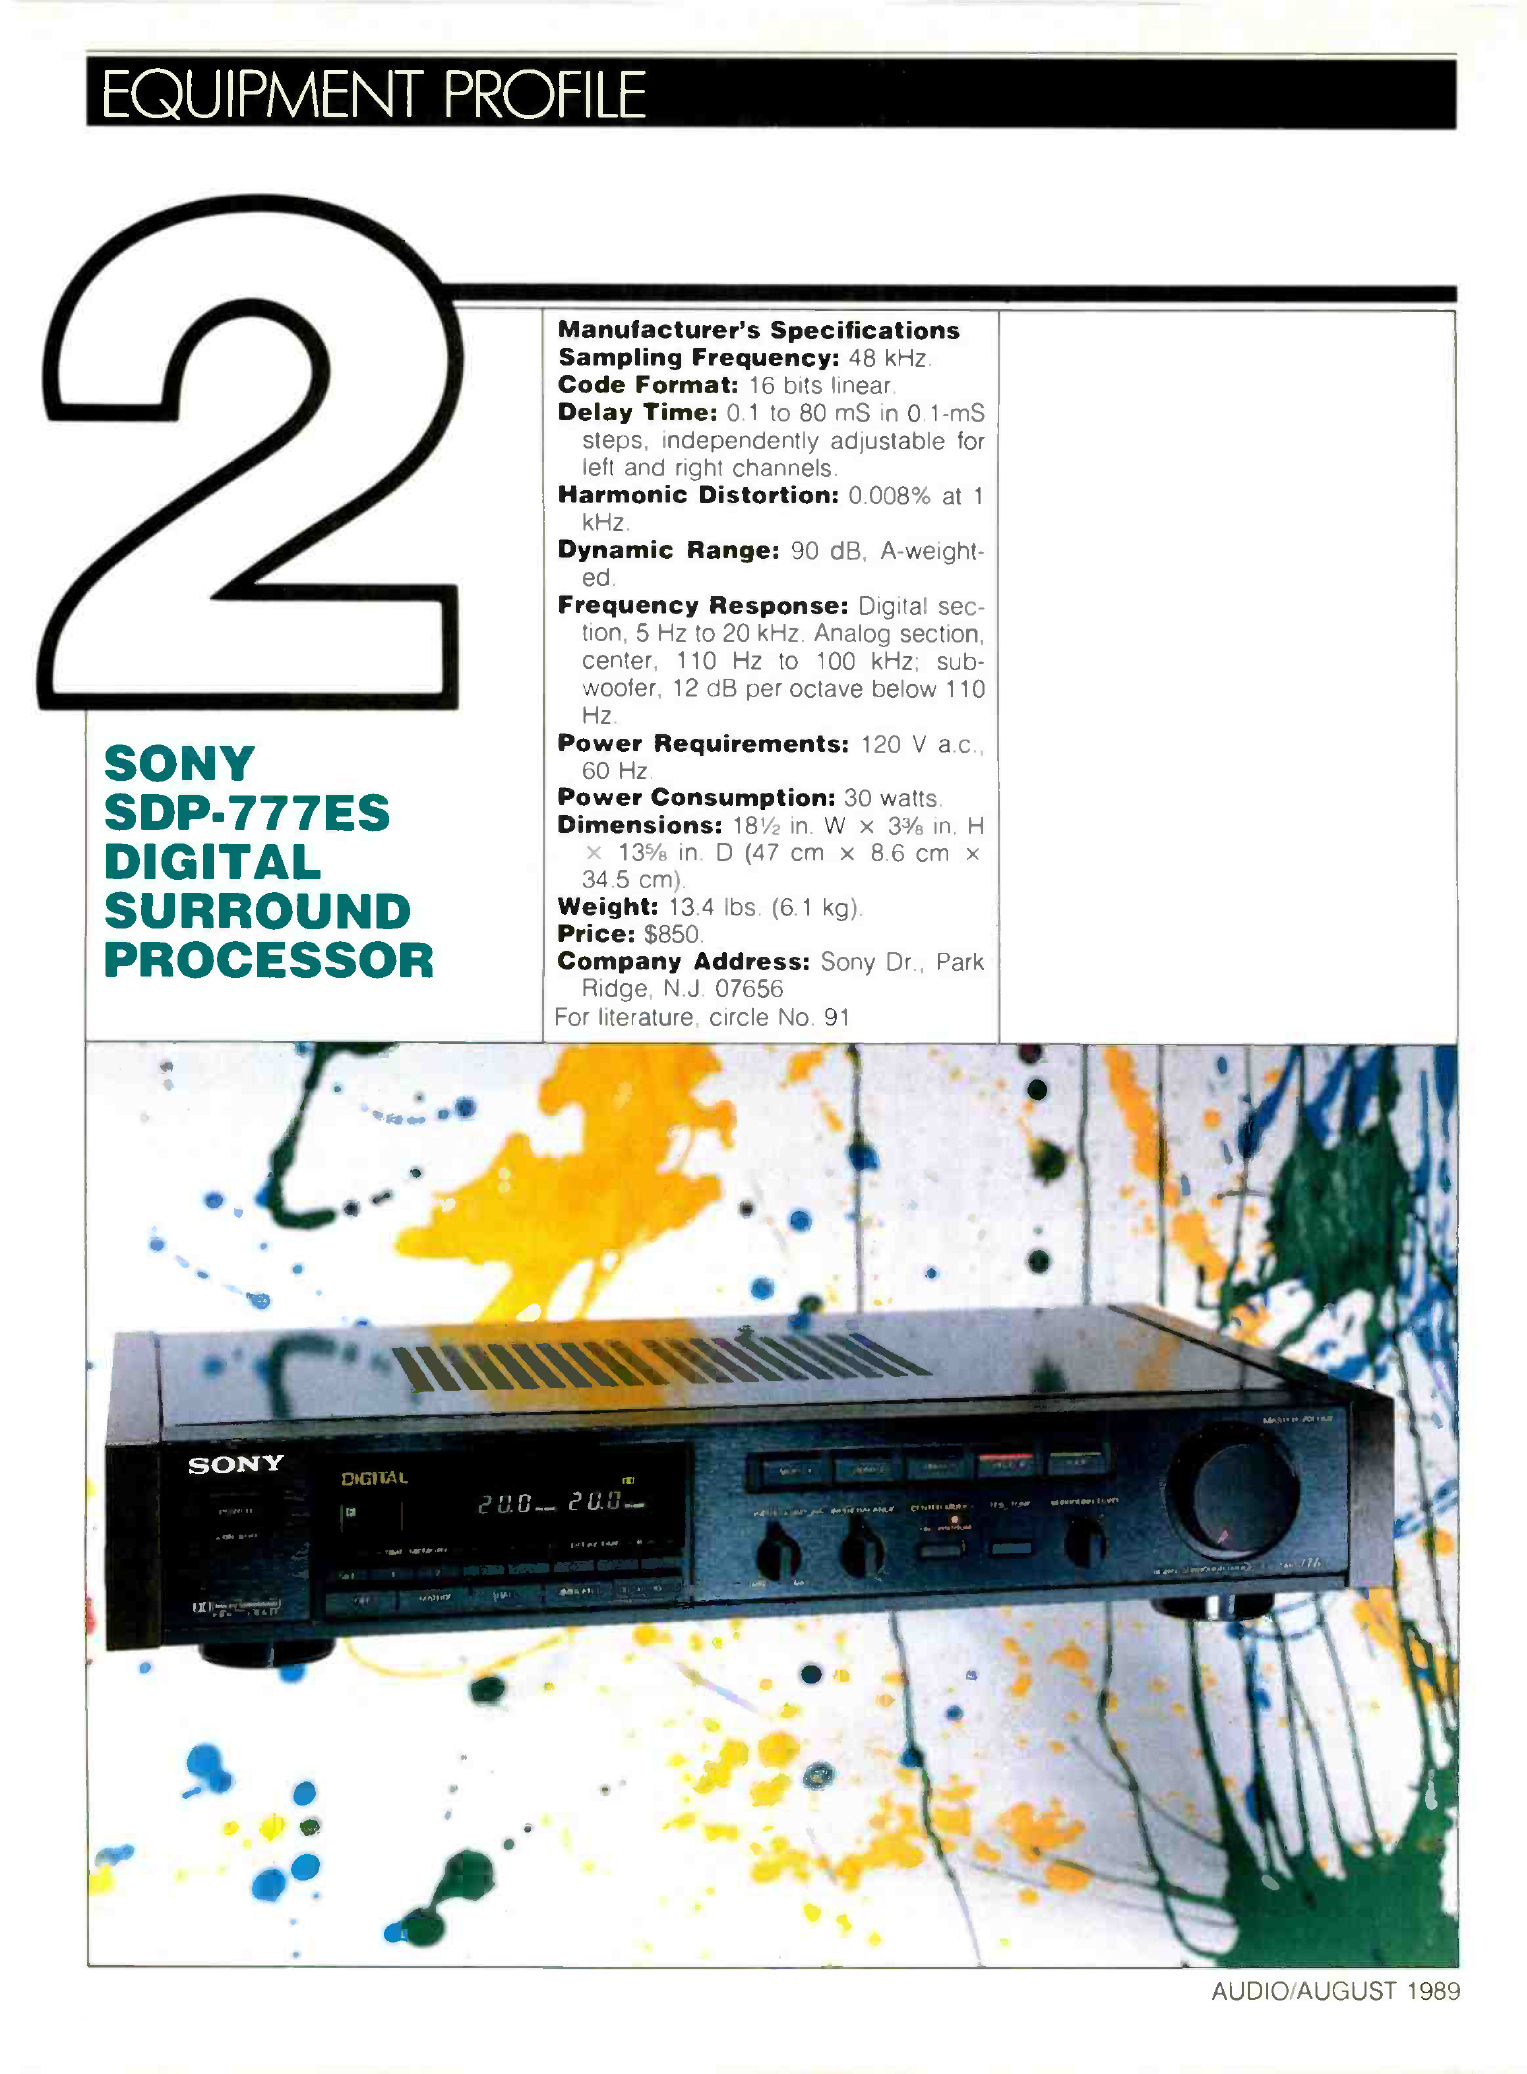 Sony SDP-777-Werbung-1989.jpg